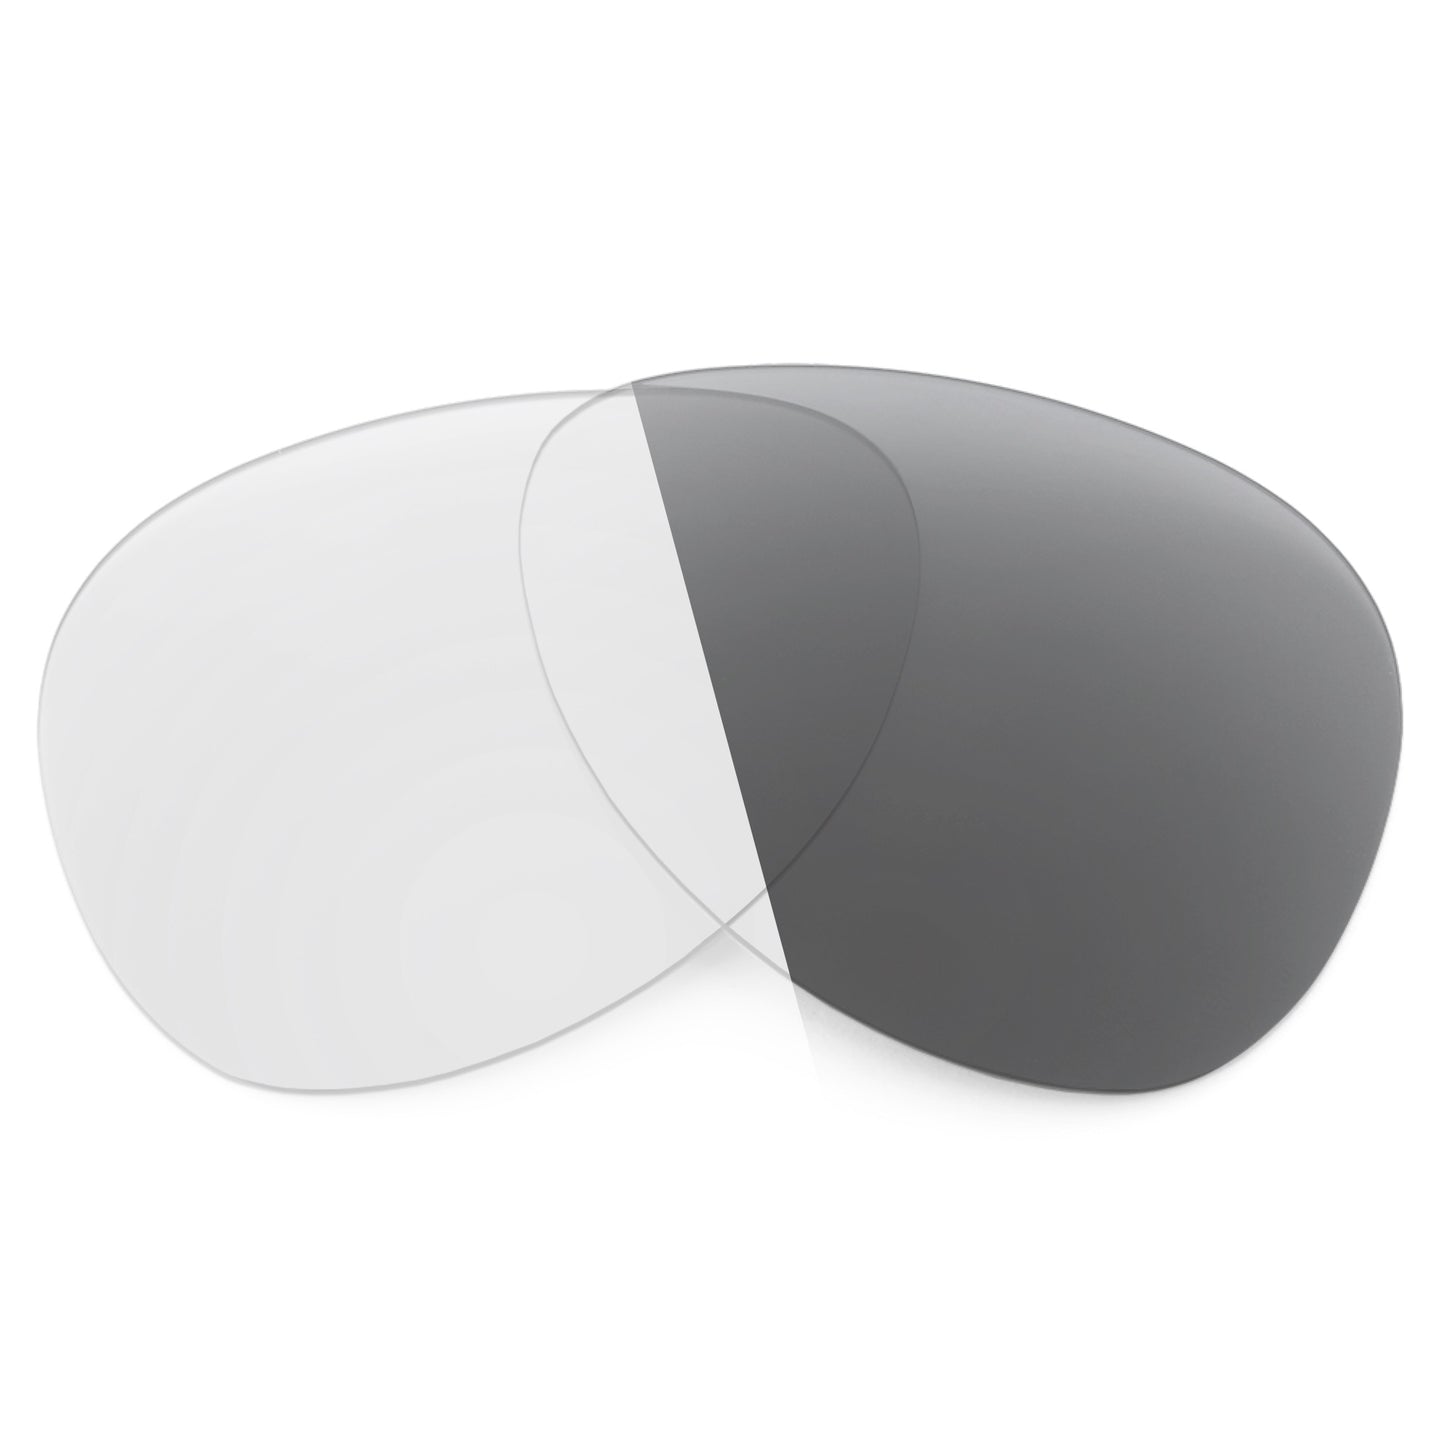 Revant replacement lenses for Oakley Overtime Non-Polarized Adapt Gray Photochromic